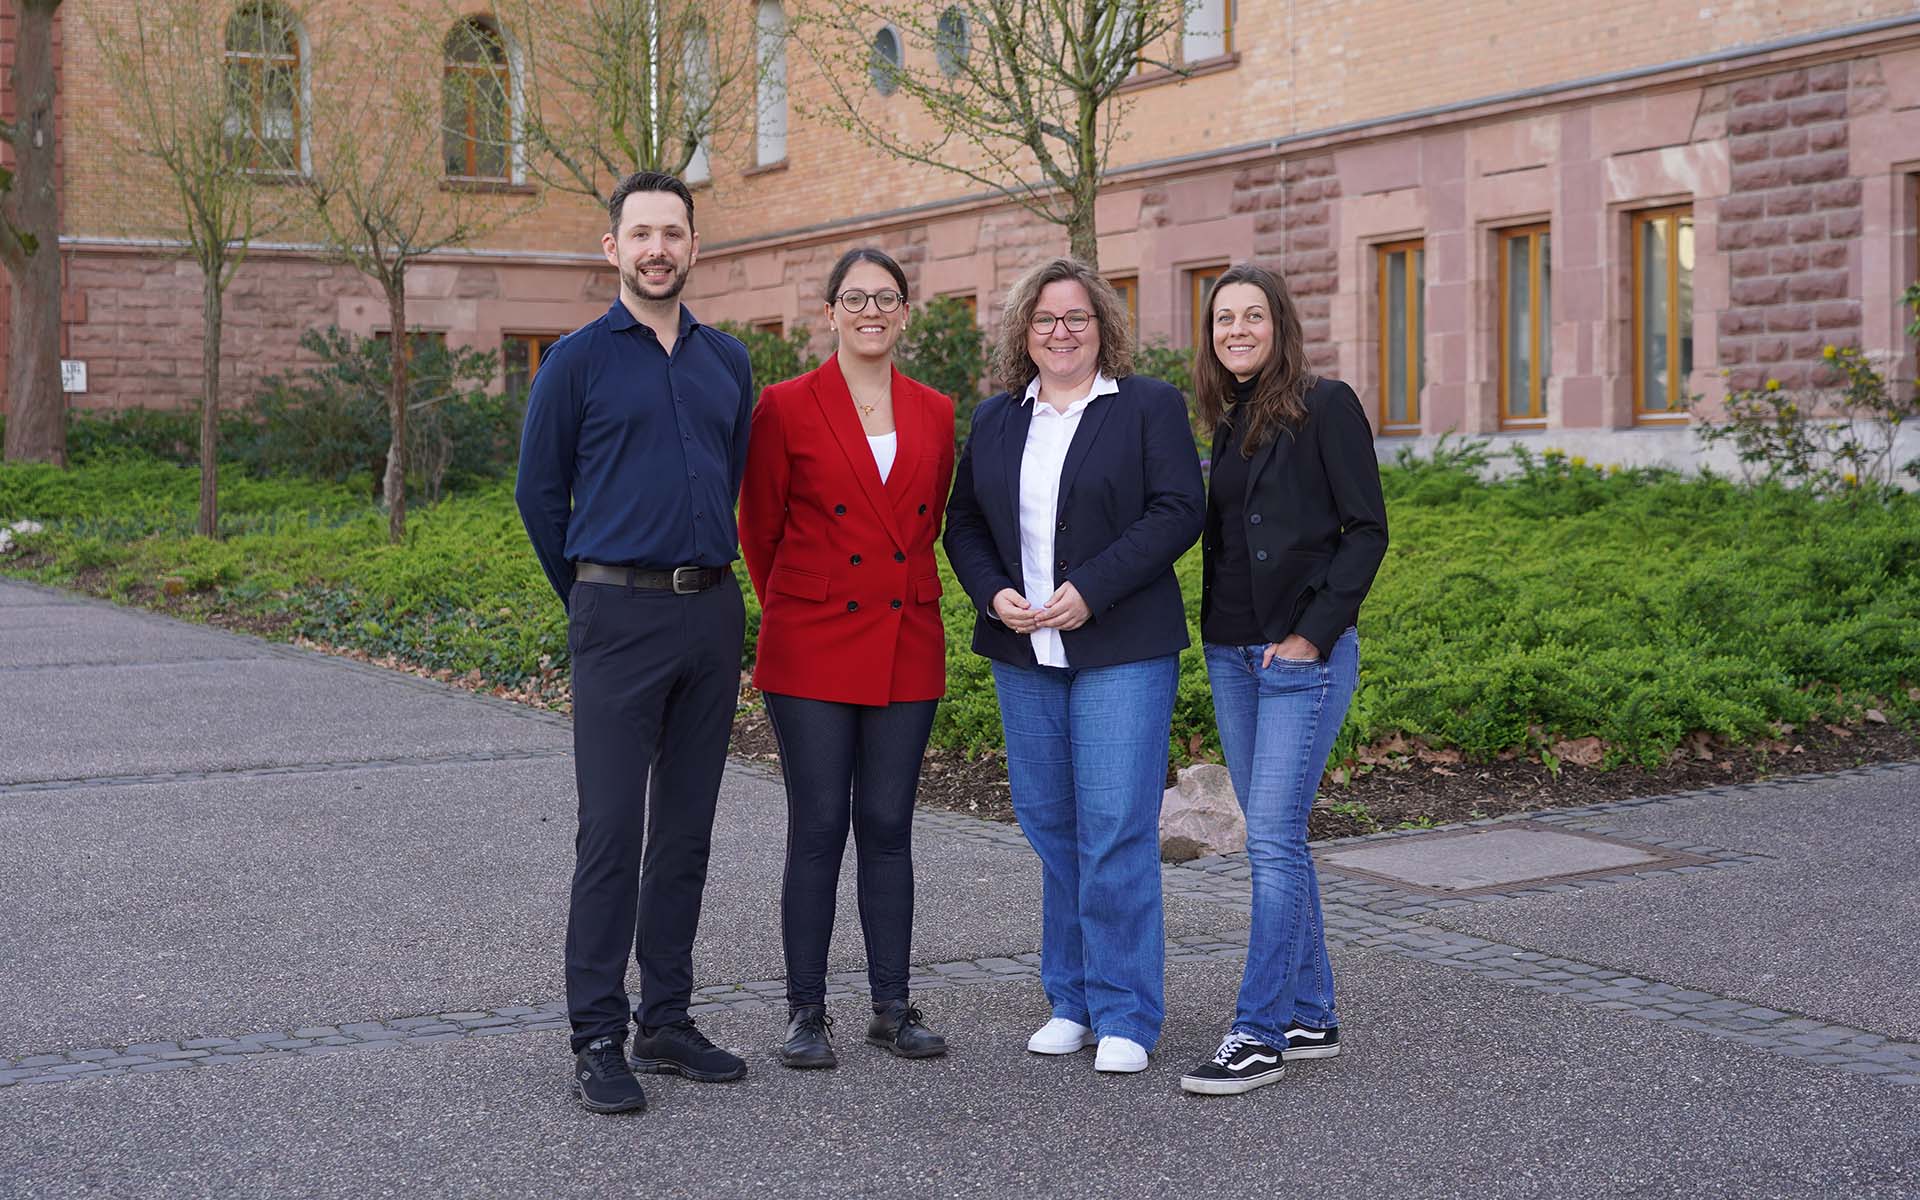 Drei Professorinnen und ein Professor der Fakultät Gesundheitswissenschaften stehen nebeneinander auf dem Campus vor einem Gebäude mit rotbraunen Backsteinen